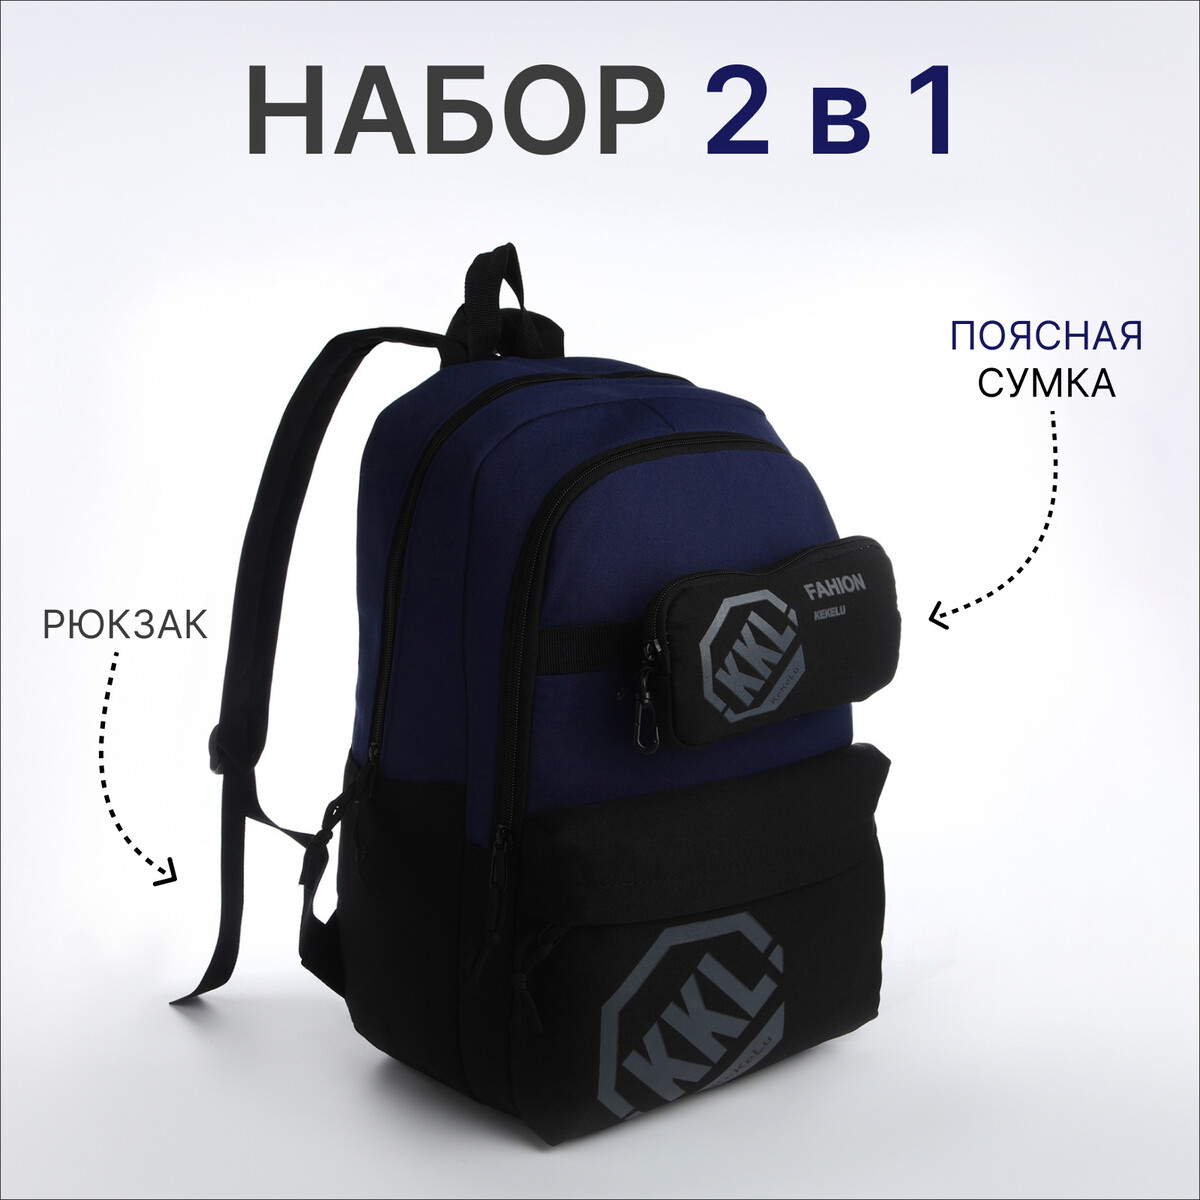 Рюкзак молодежный из текстиля на молнии, 3 кармана, сумка, держатель для чемодана, цвет черный/синий рюкзак молодежный водонепроницаемый на молнии 3 кармана голубой синий